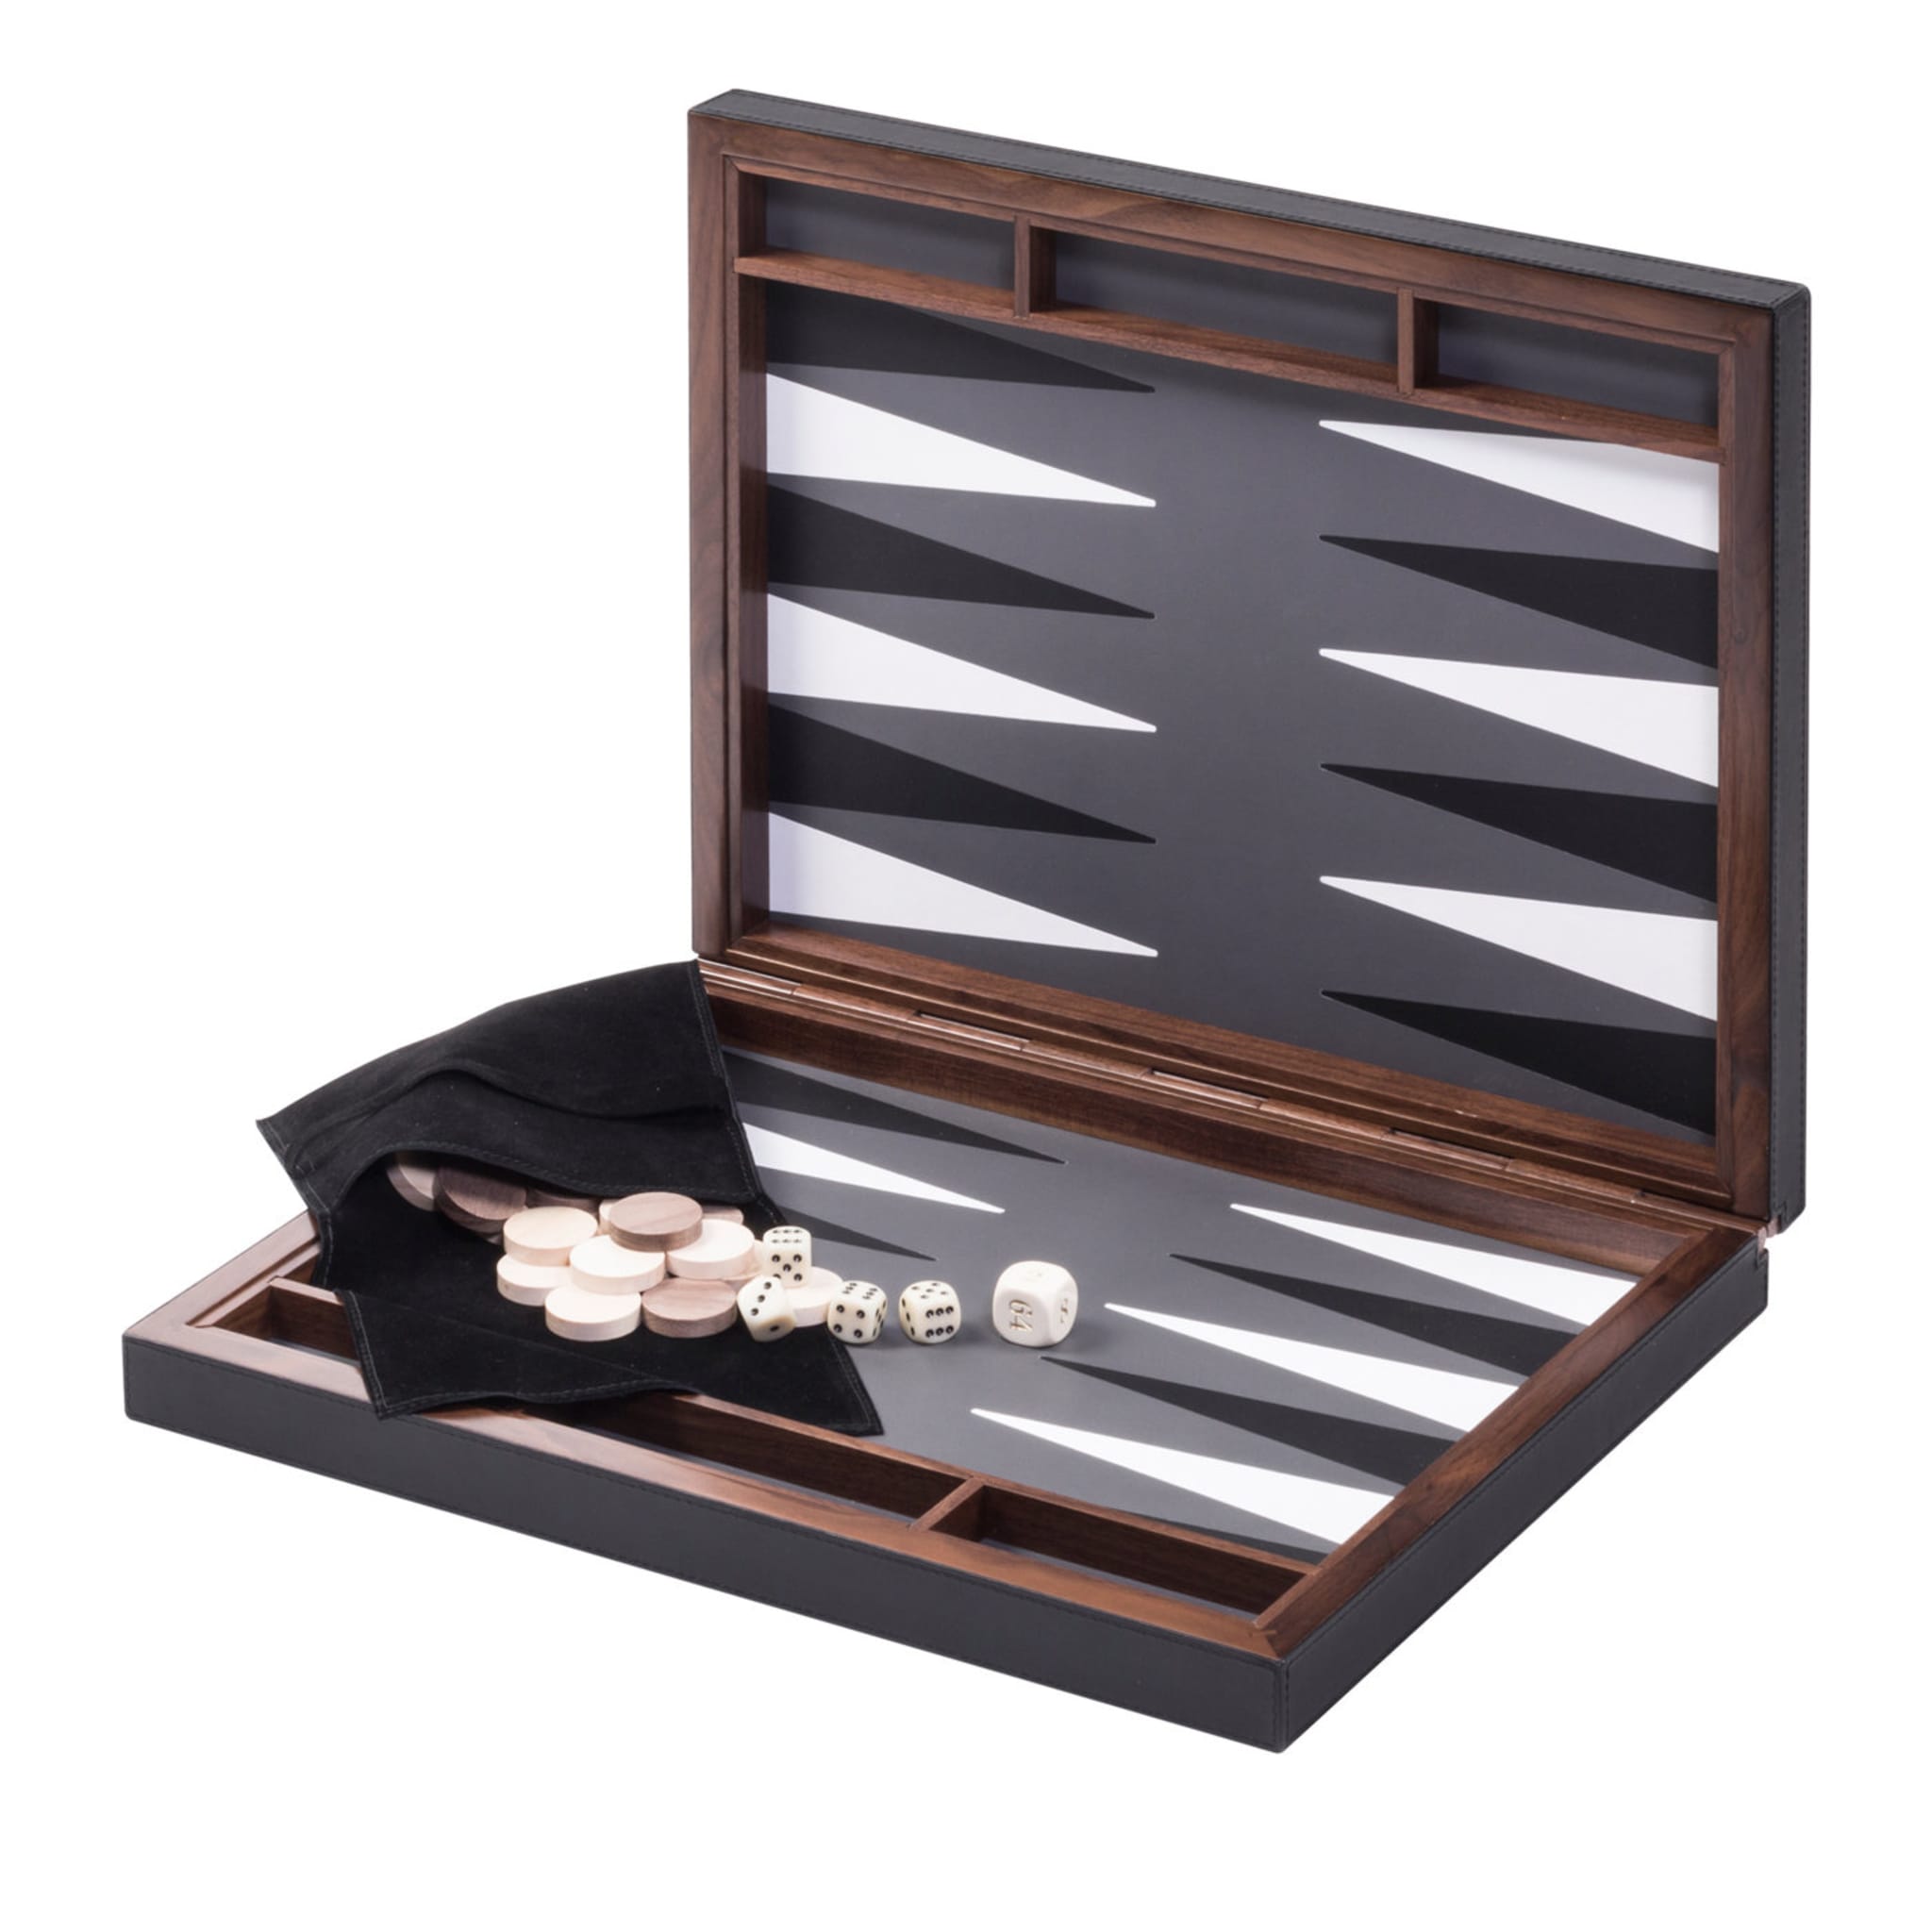 Safari Backgammon Case - Main view